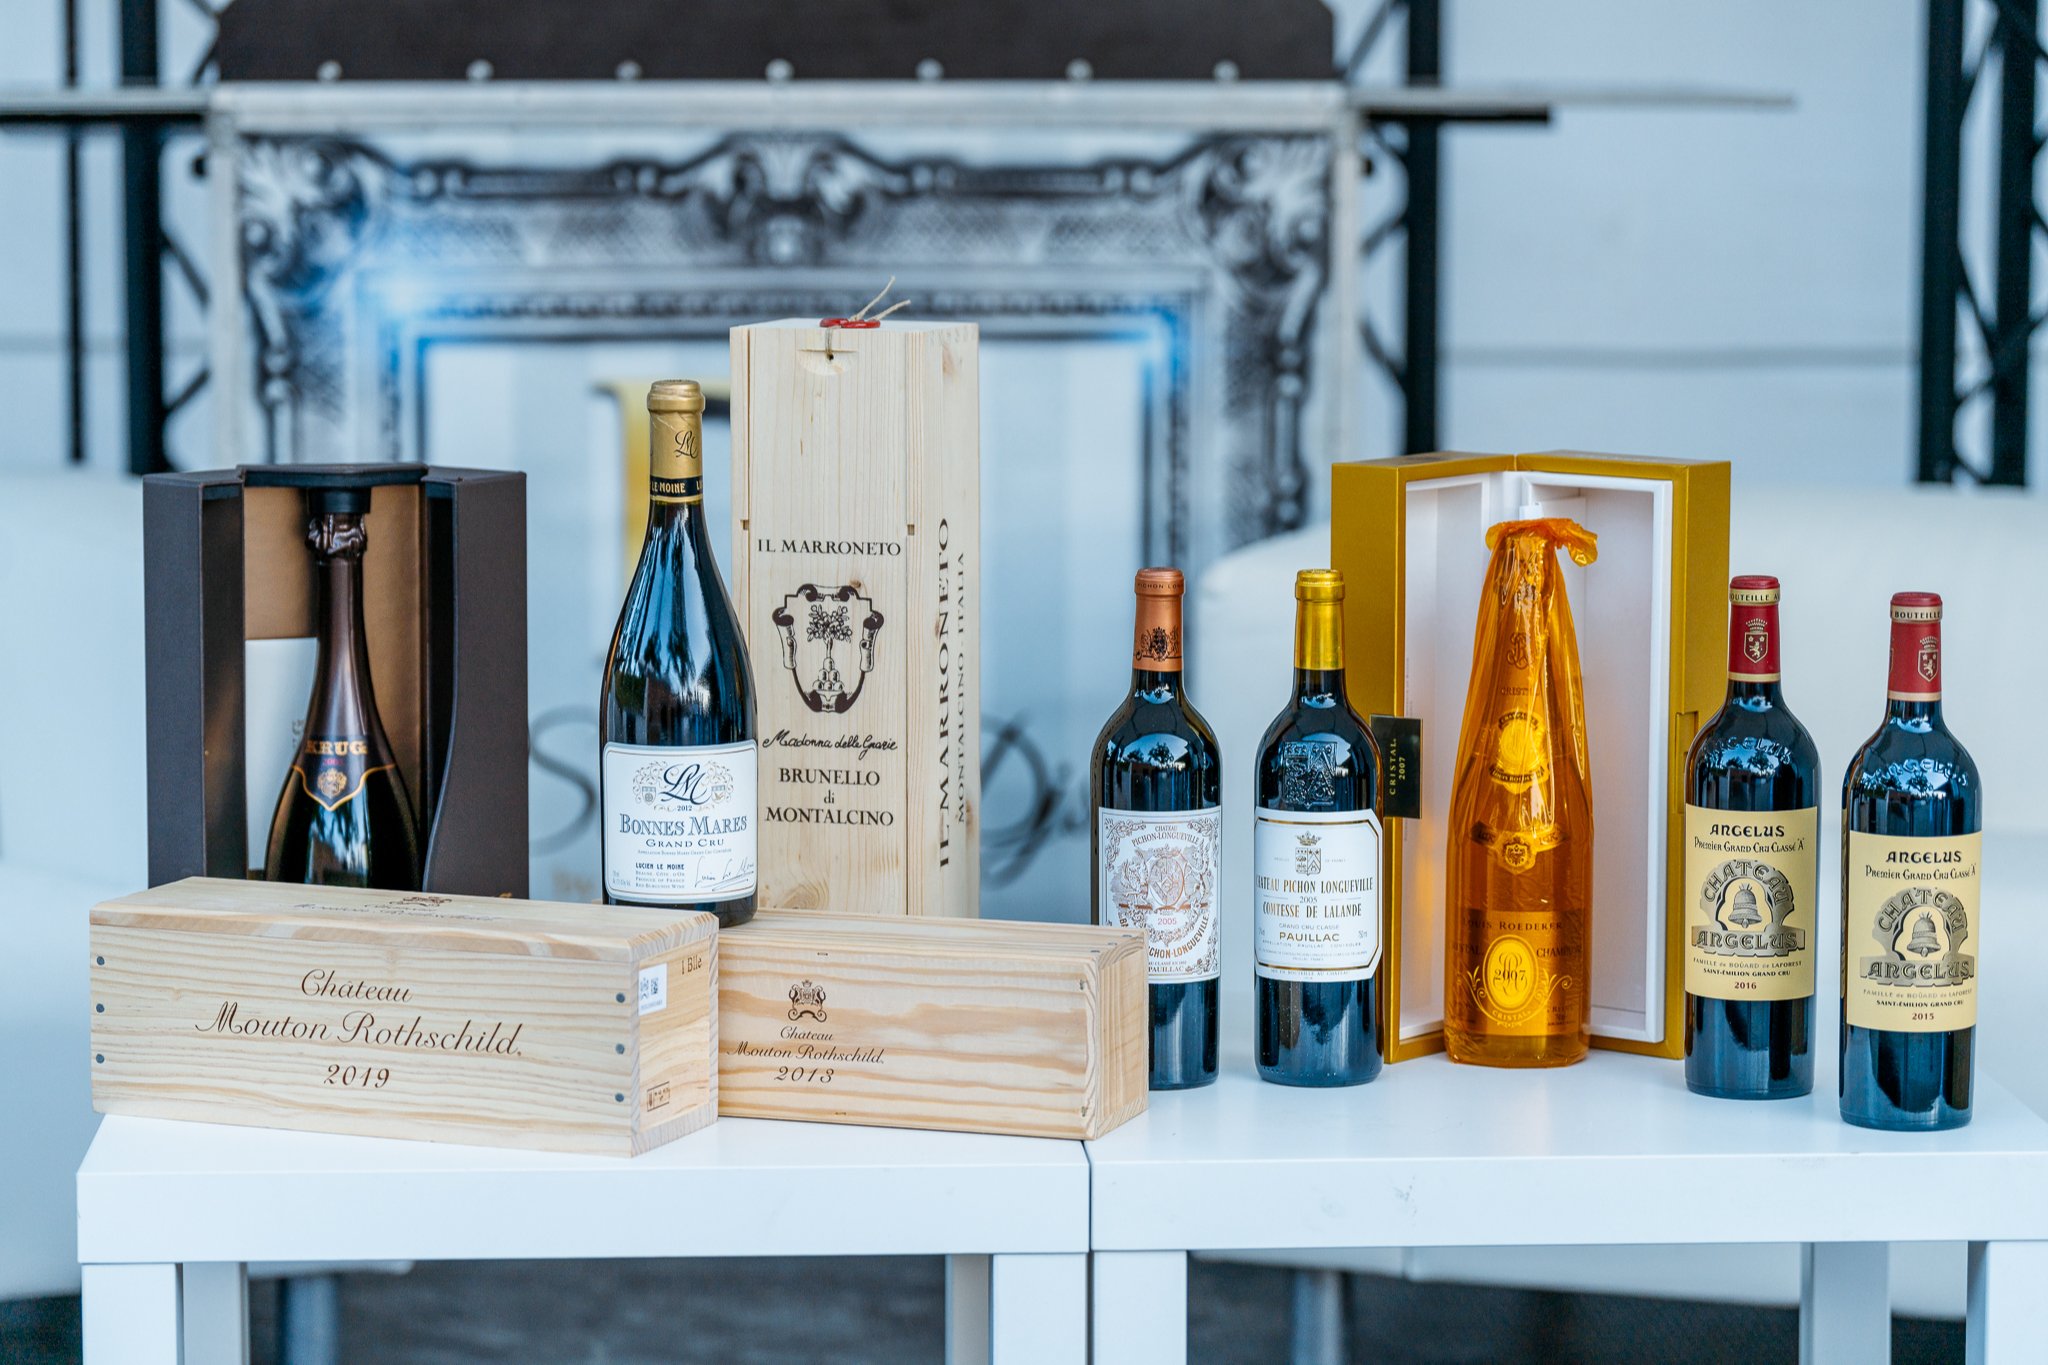 Charitativní dražba prestižních francouzských vín na Gentlemen's Clubu v Olomouci přispívá Nadaci rodiny Morávkových